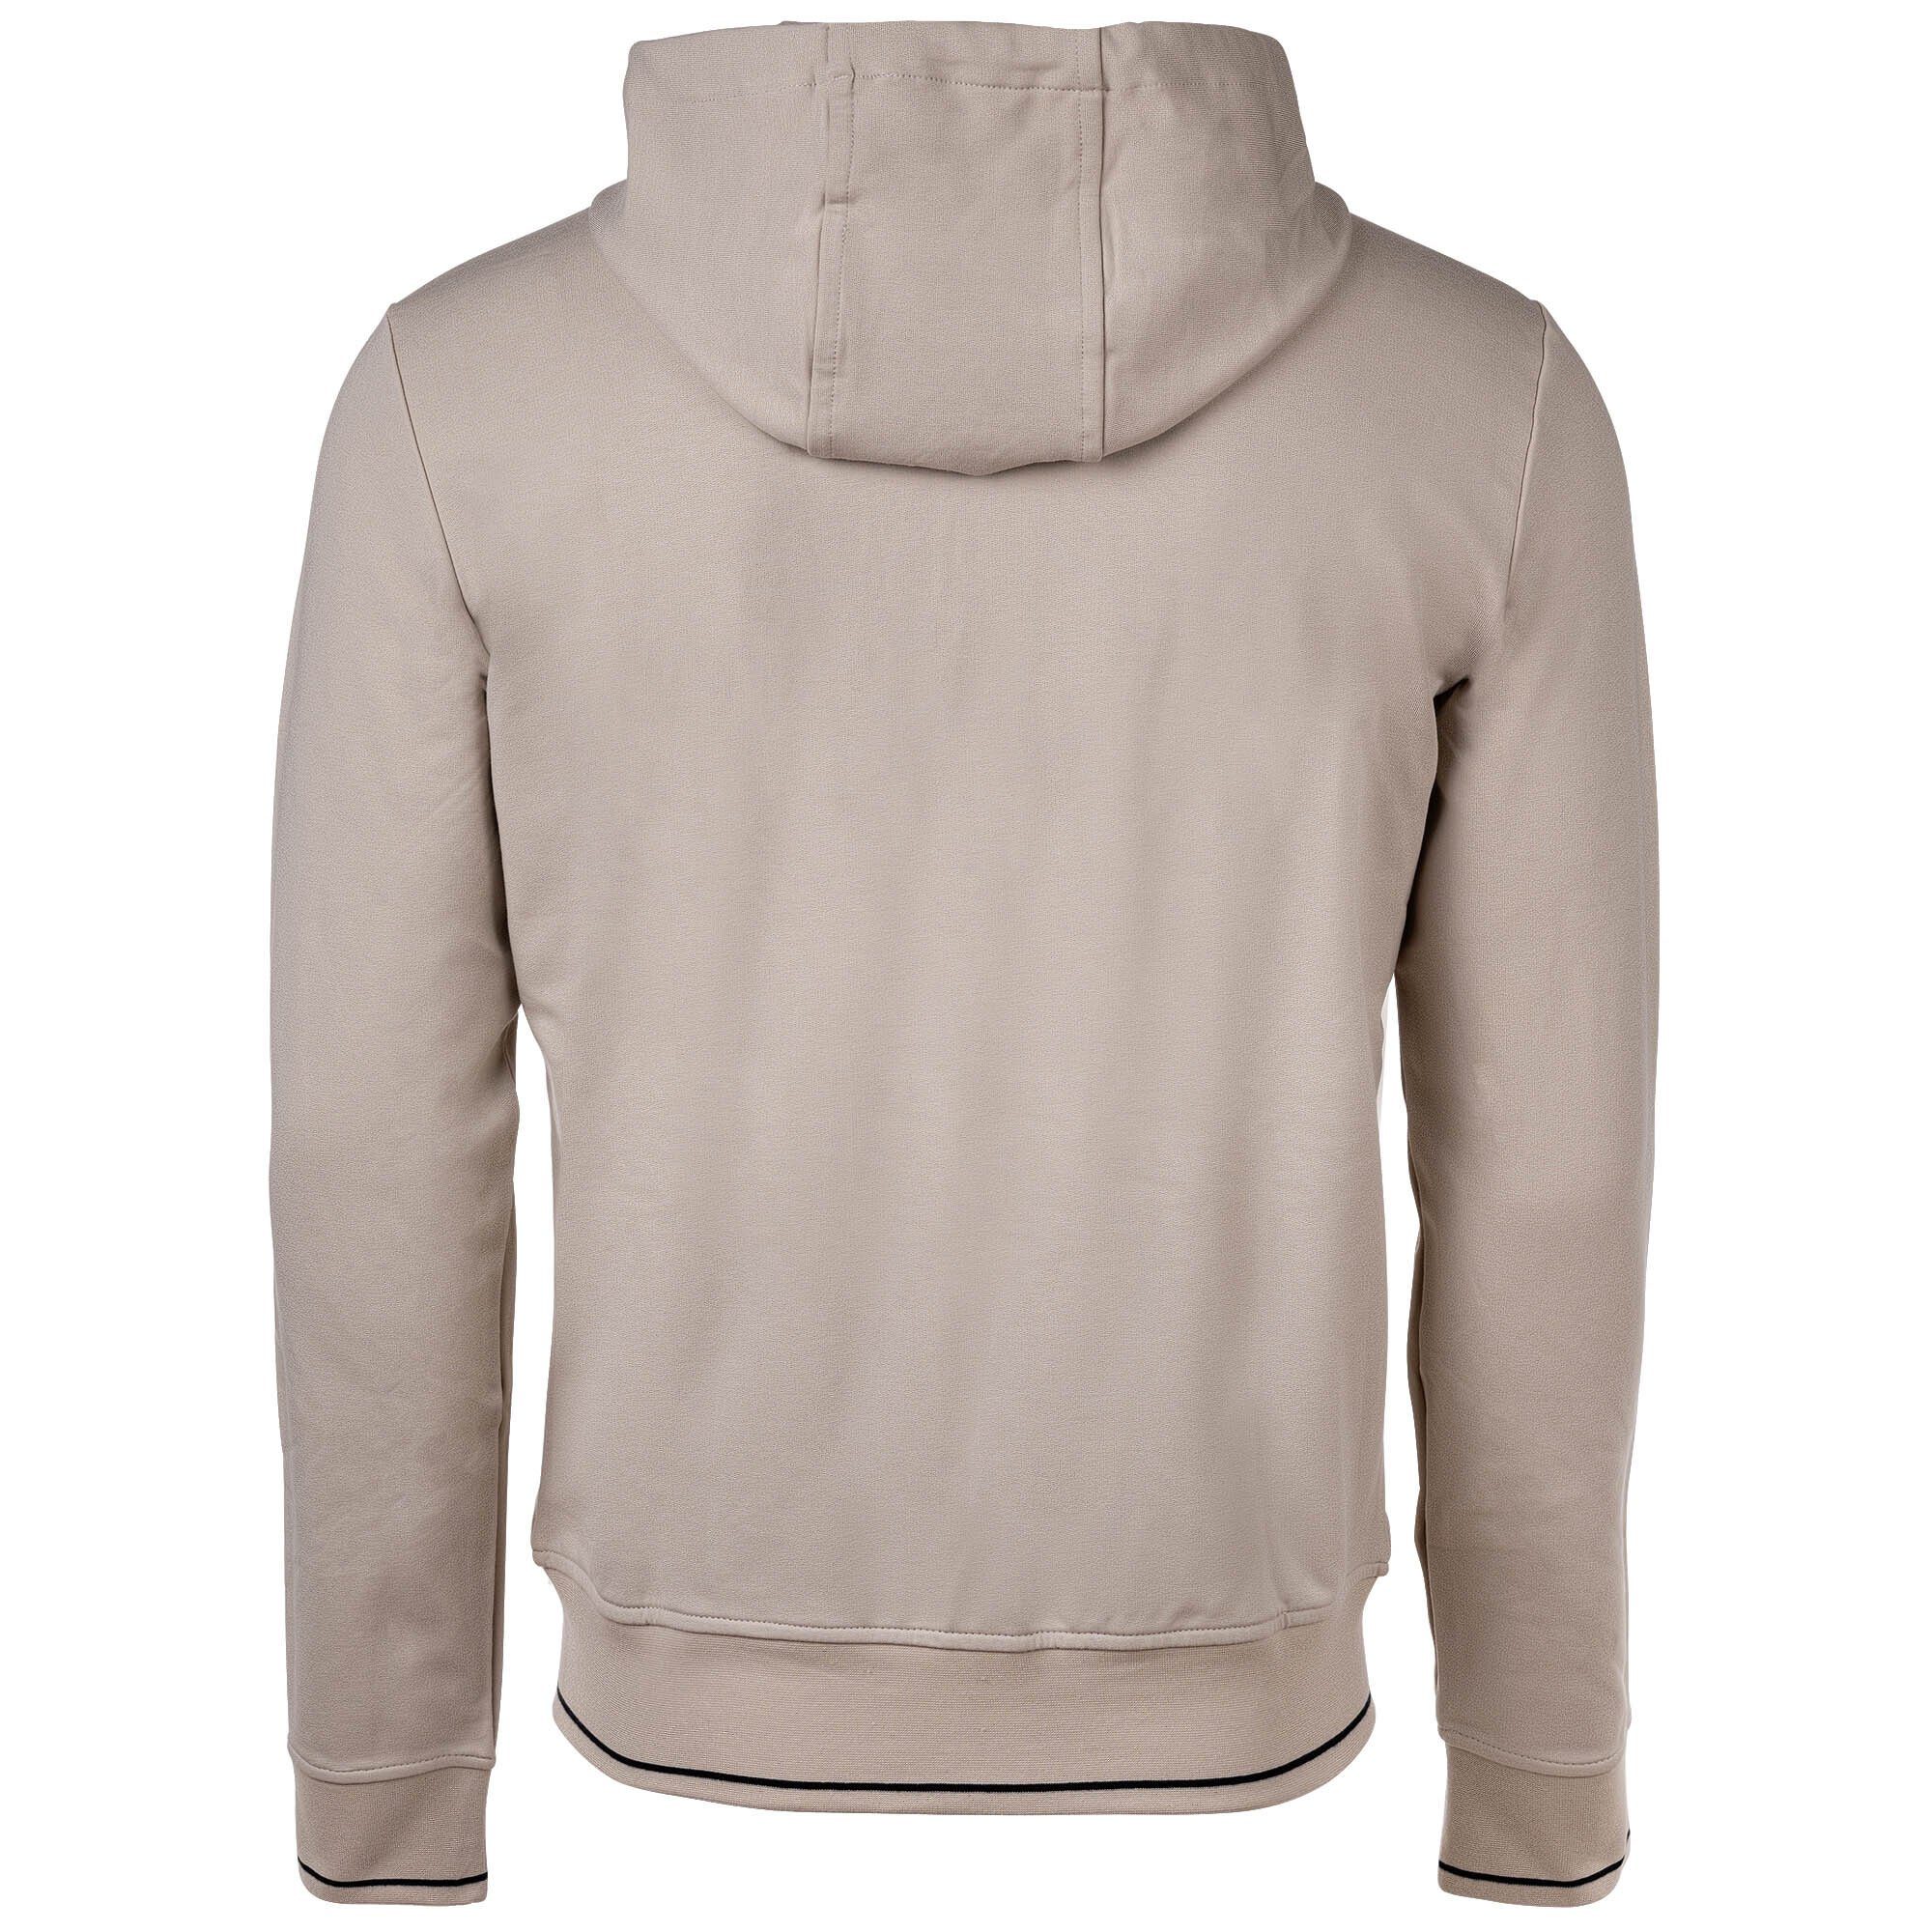 ARMANI EXCHANGE Sweatshirt Herren Sweatshirtjacke, Logo - Beige (Silver Lining) Jacke Baumwolle